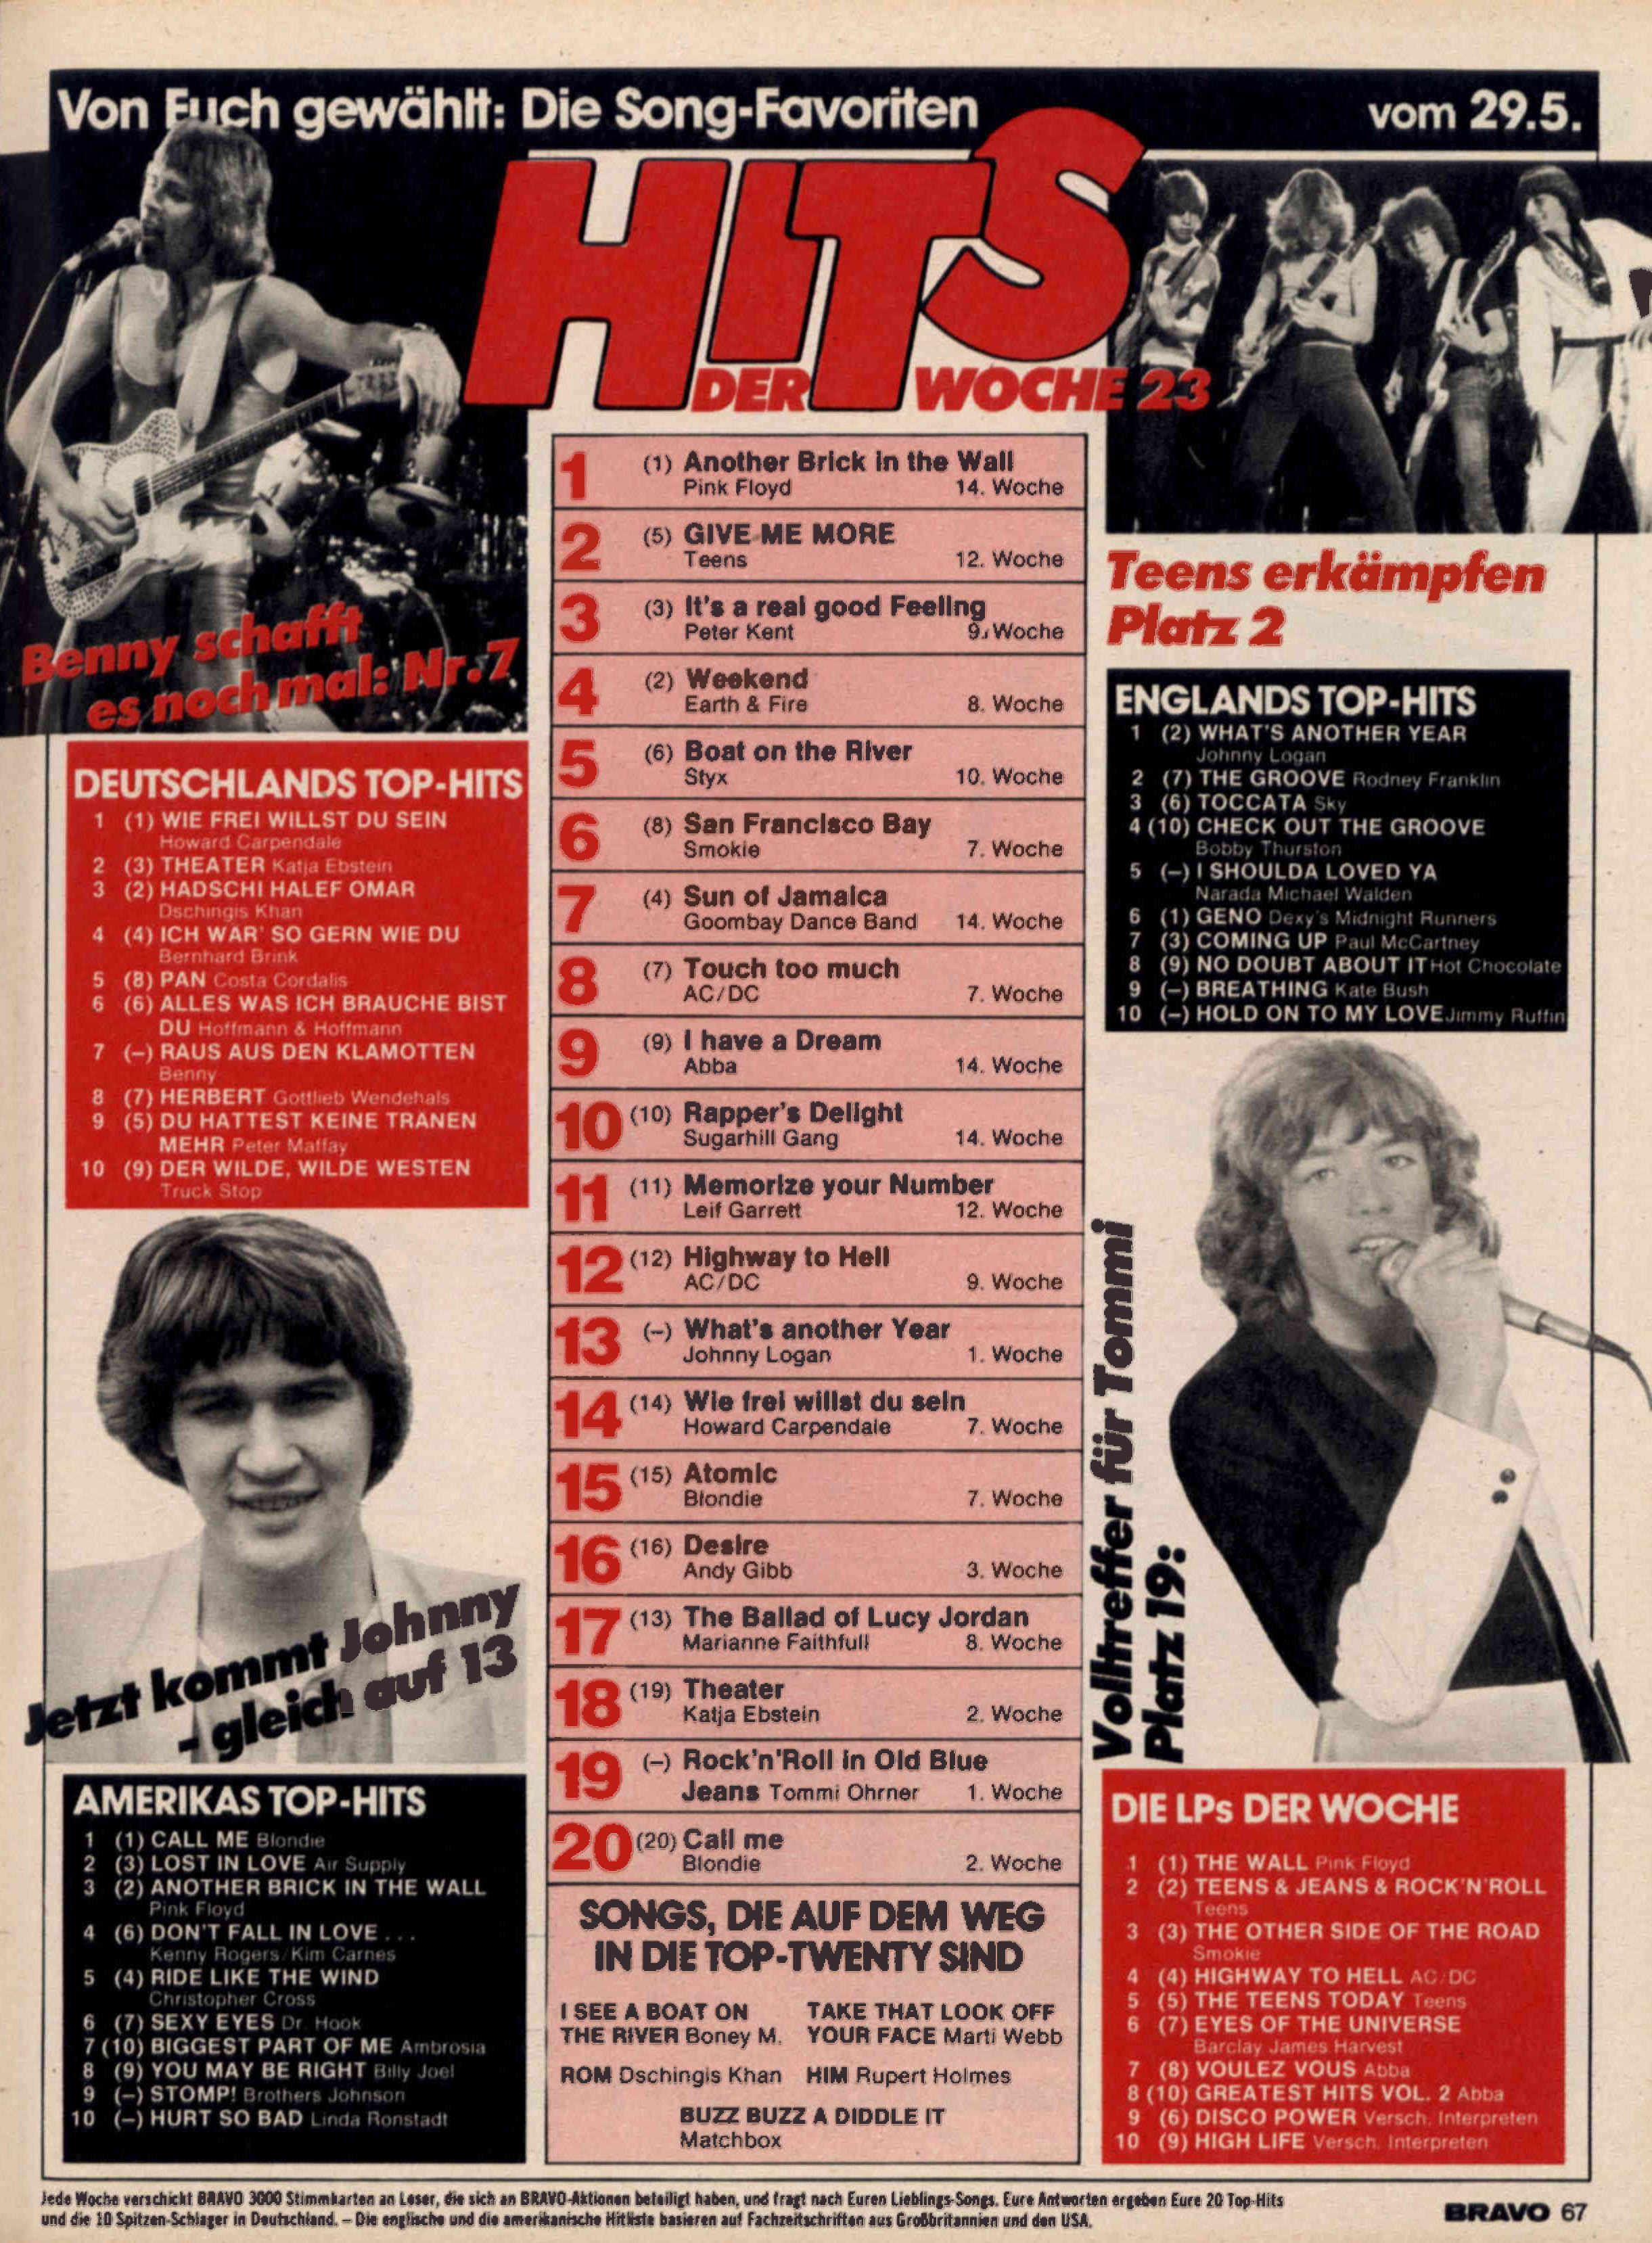 1980 Charts